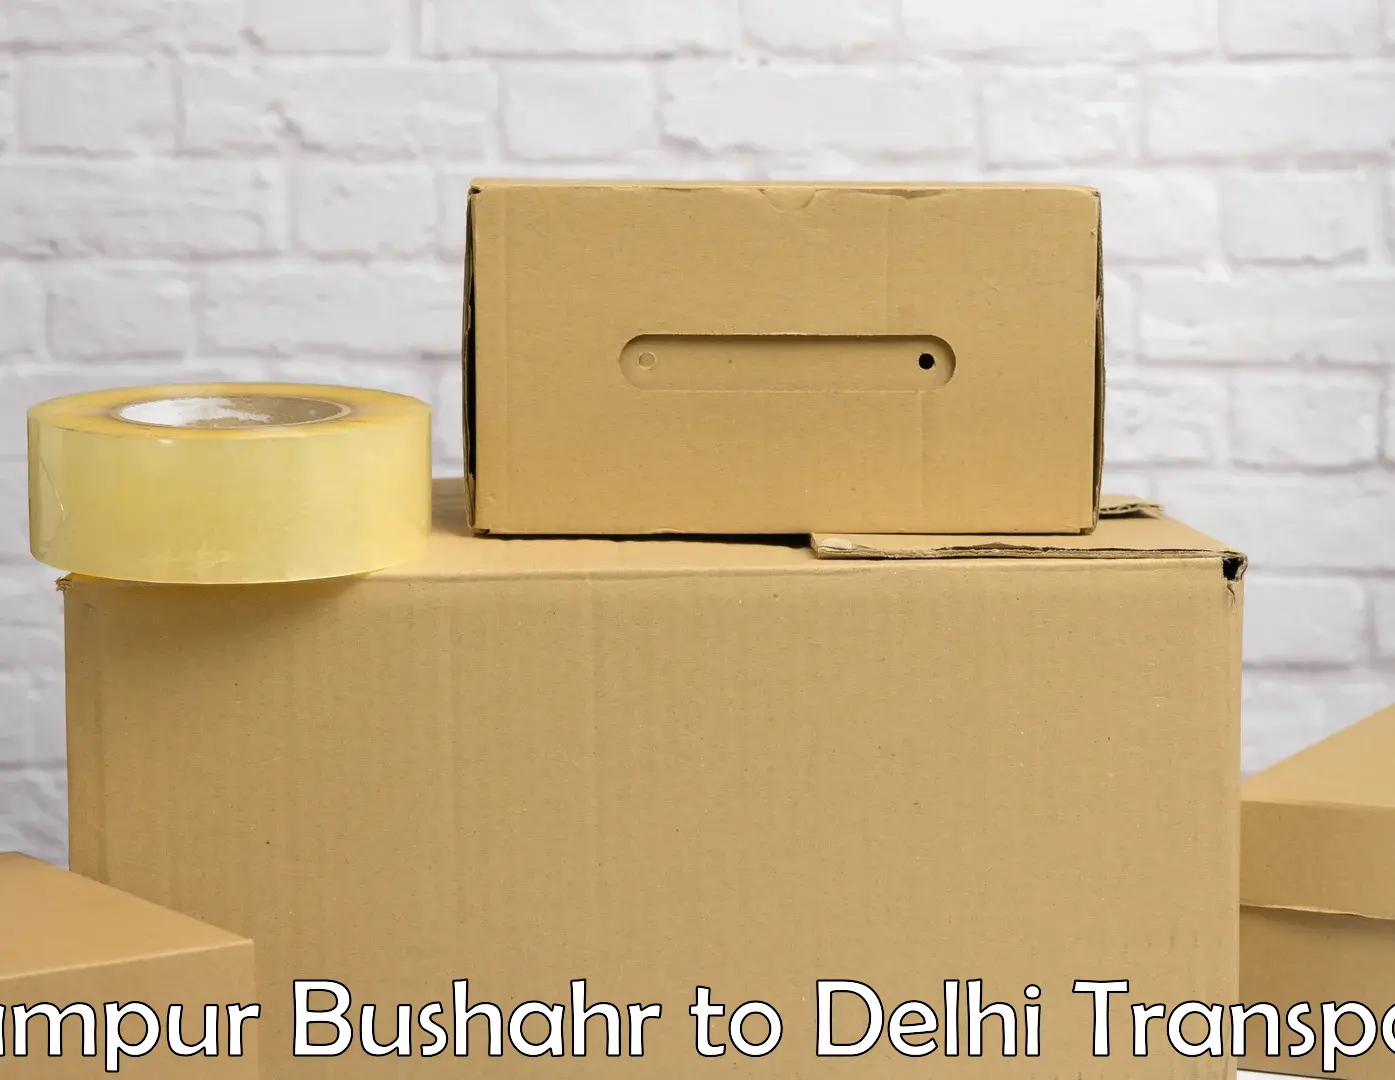 Air freight transport services in Rampur Bushahr to IIT Delhi